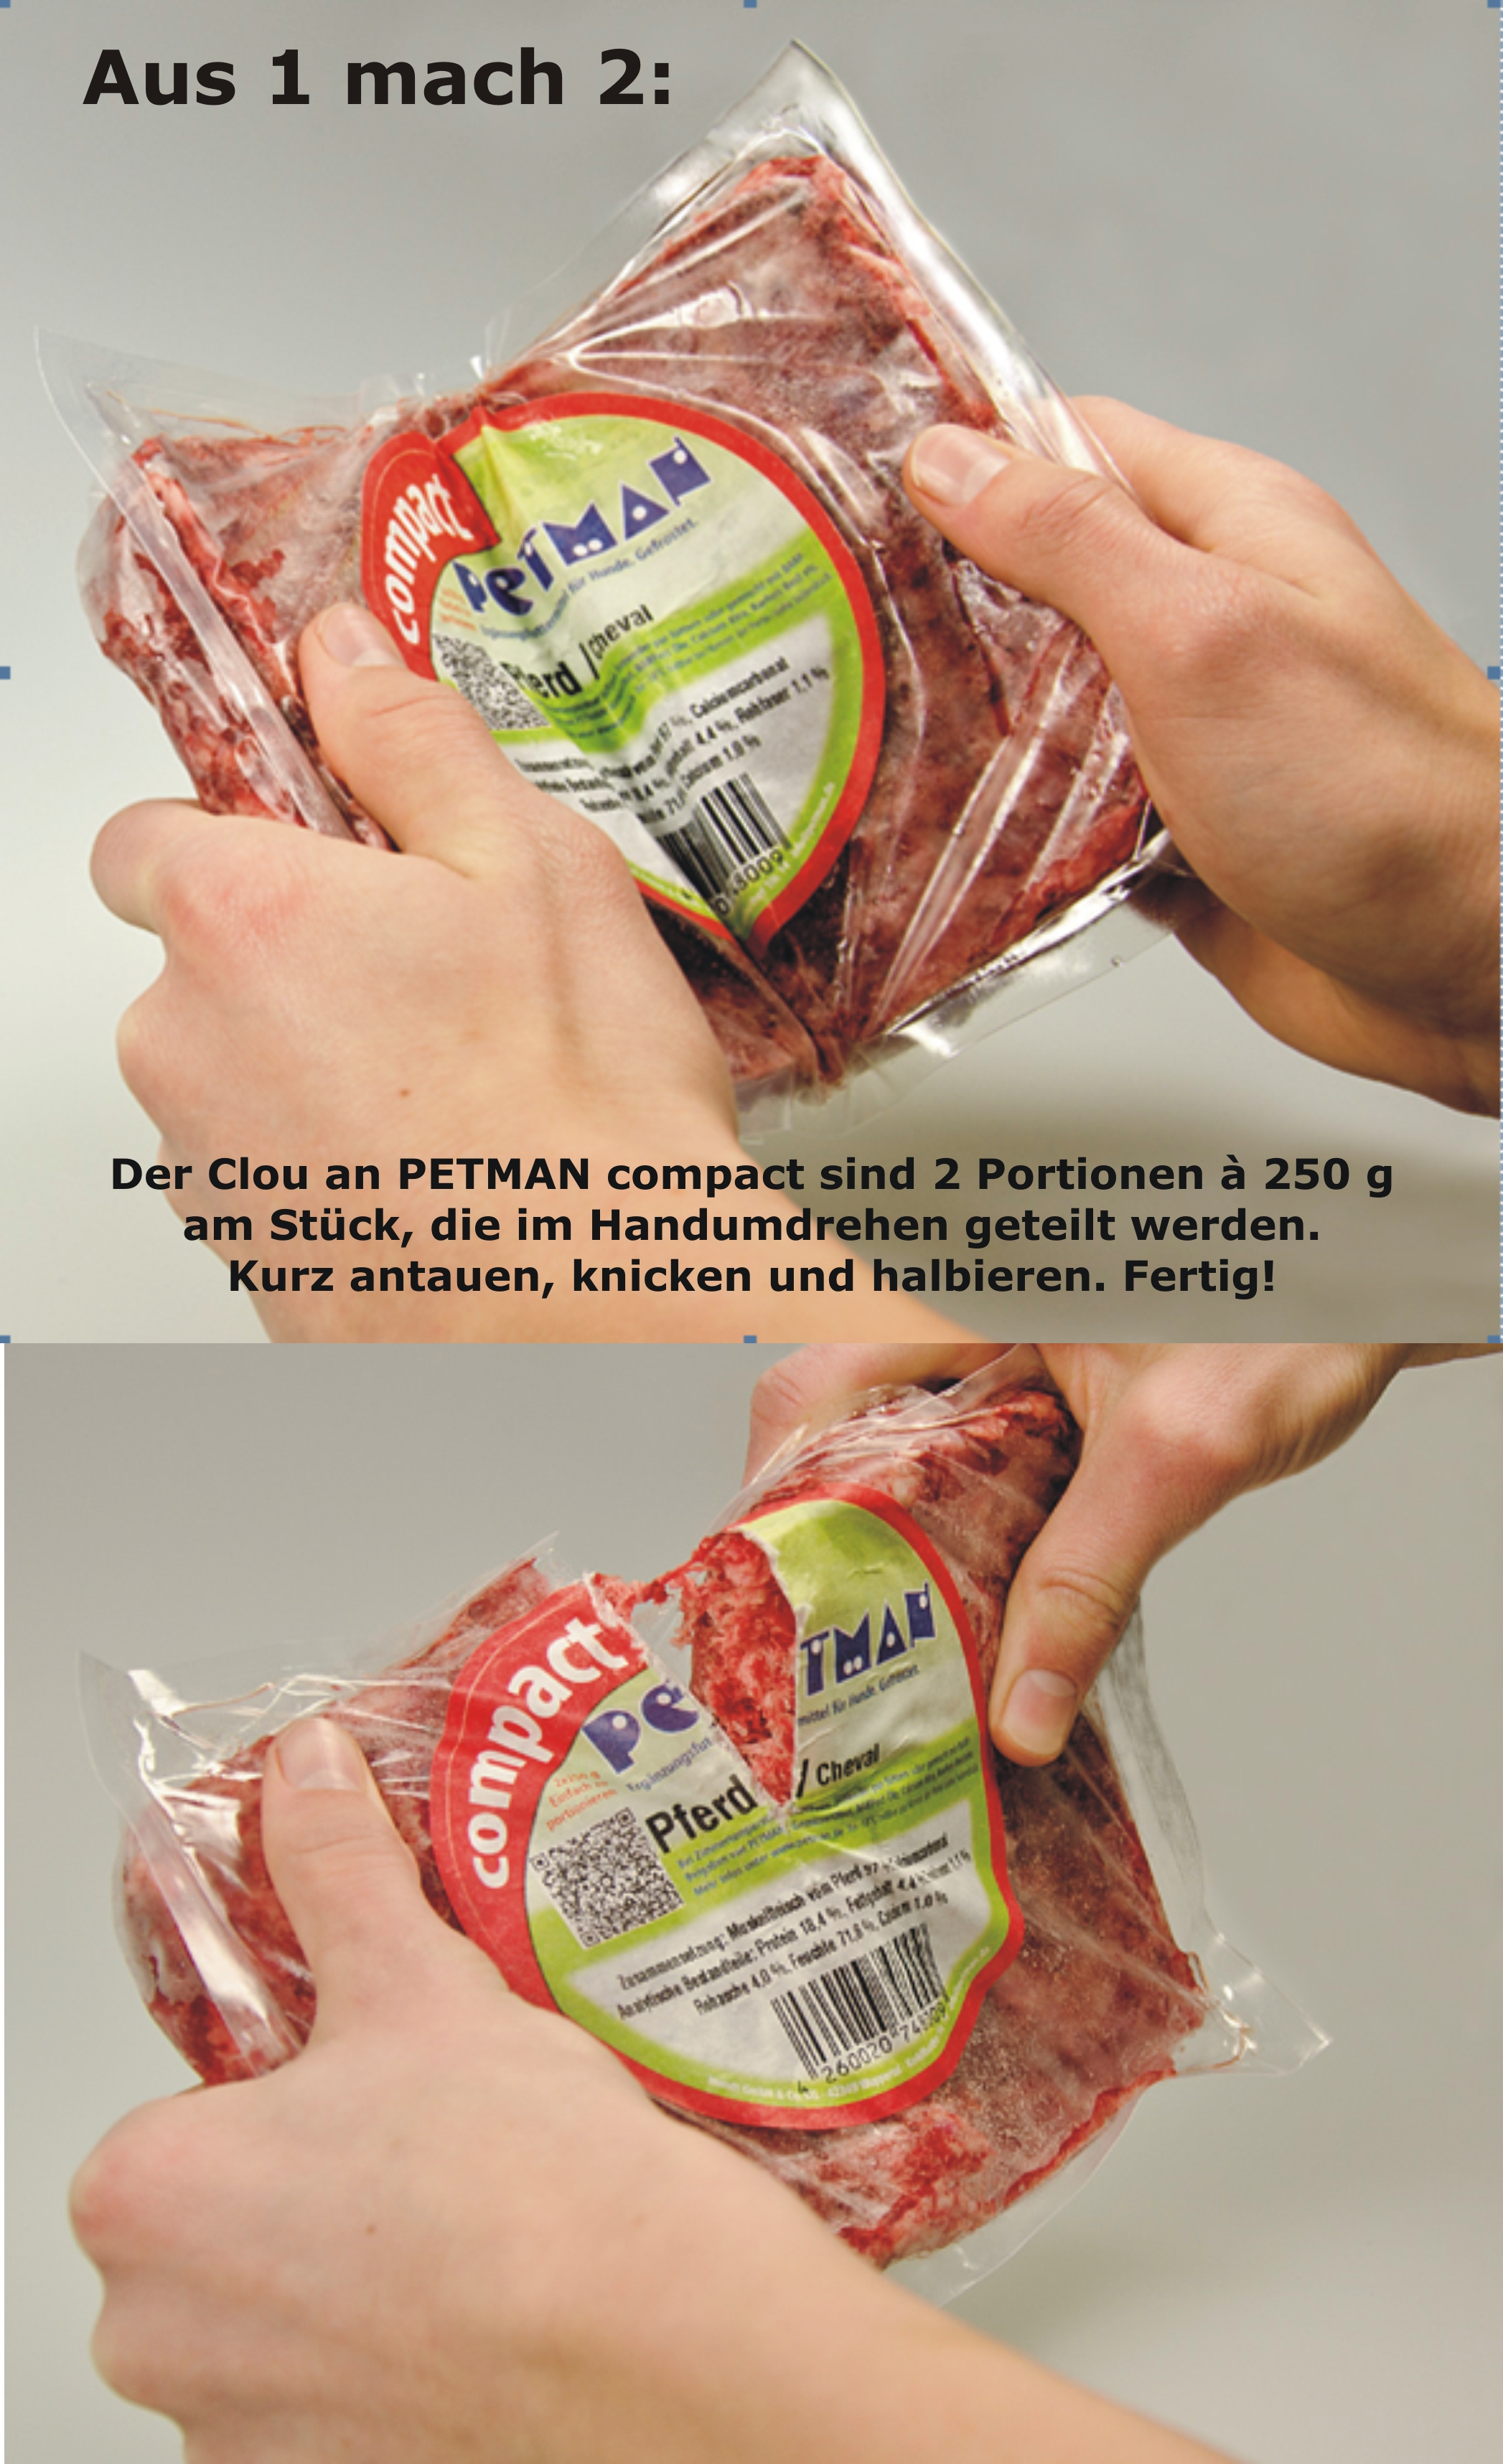 Petman compact Rindfleisch